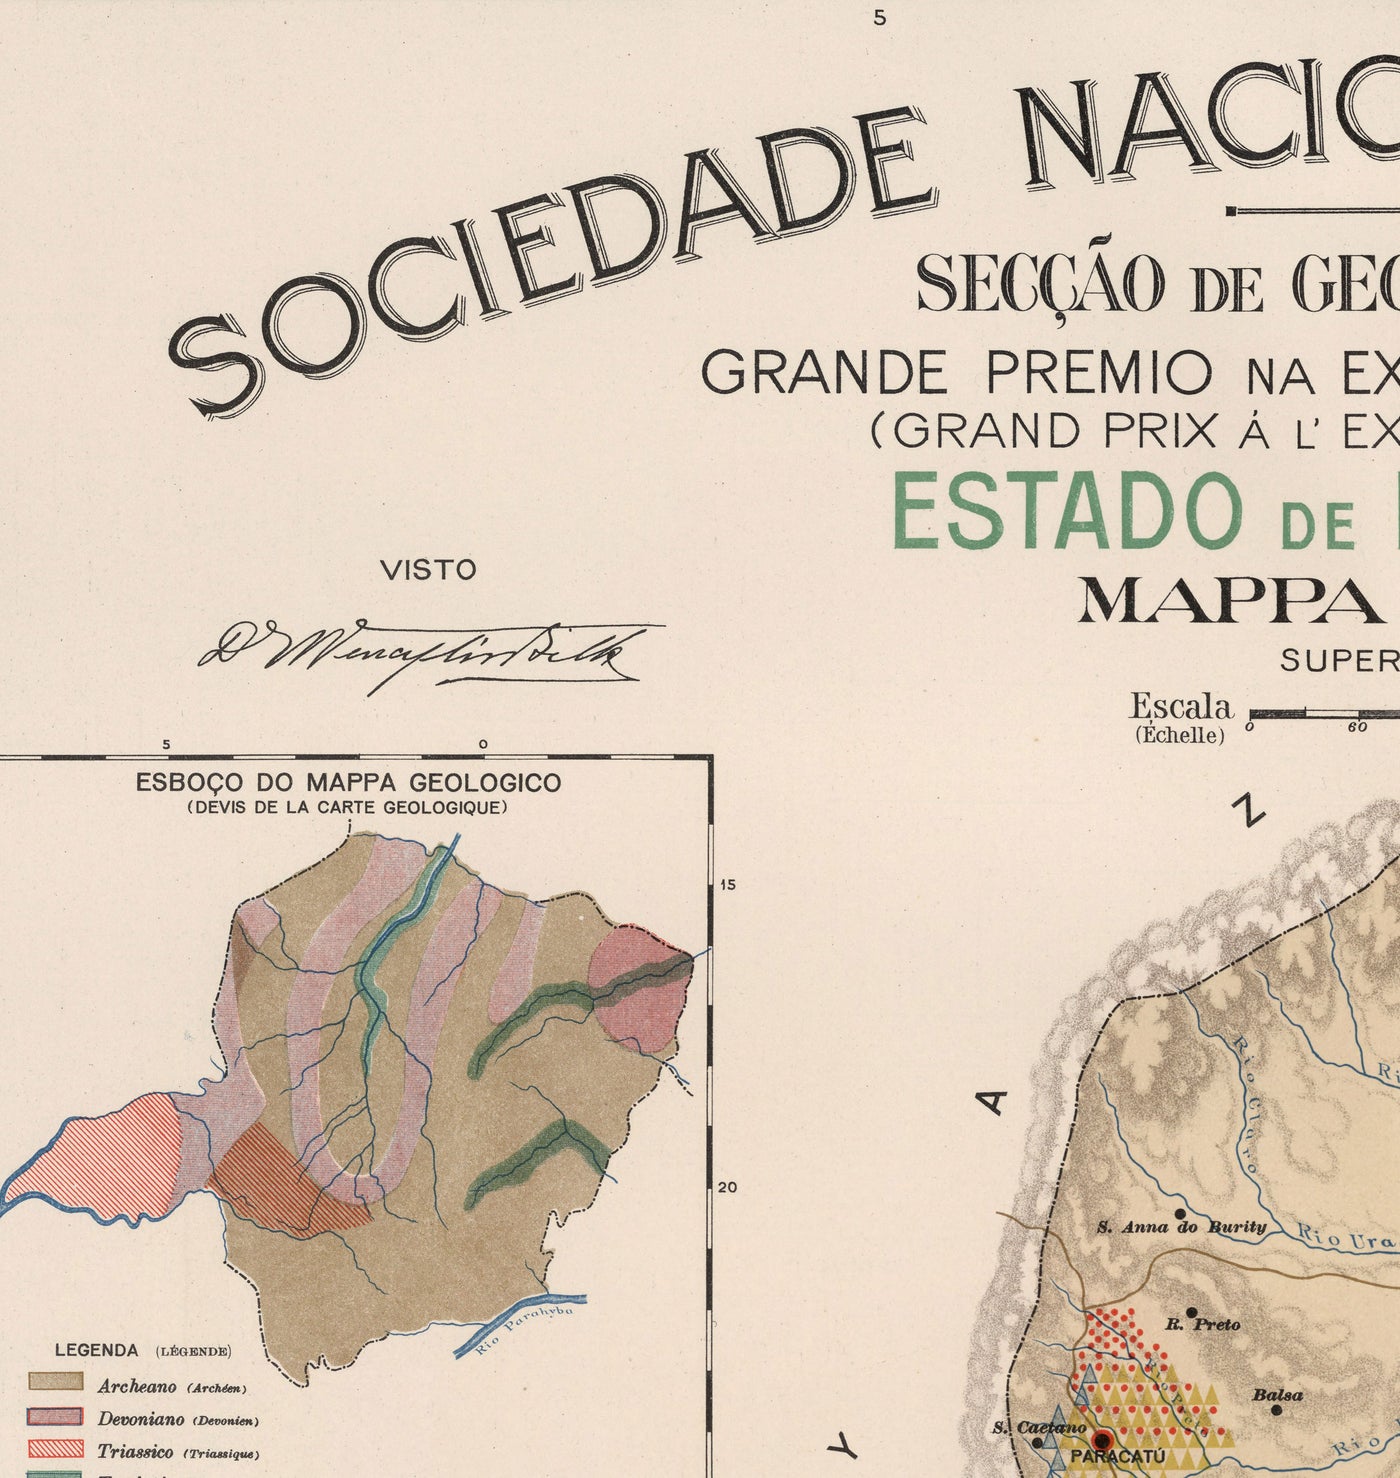 Mapa antiguo de Minas Gerais, Brasil en 1908 - Agricultura, Geología, Rocas, Suelo - Belo Horizonte, Uberlandia, Uberaba, Juiz de Fora, Curvelo